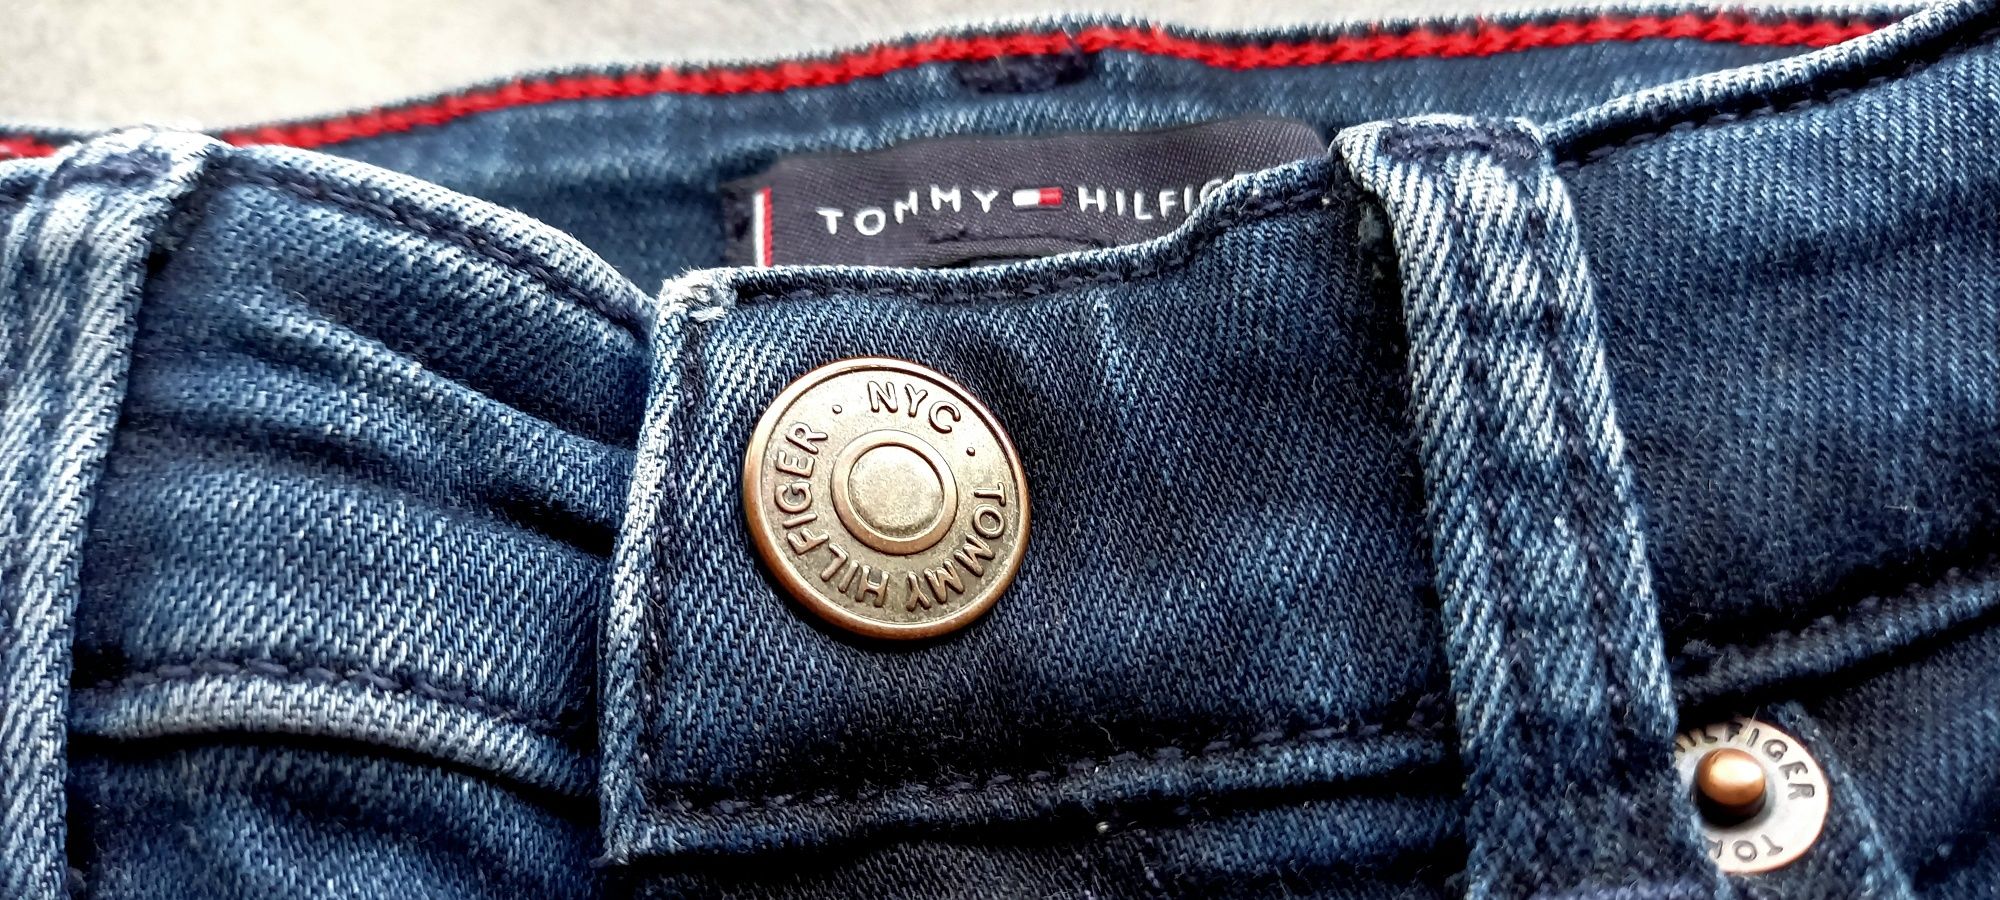 Tommy Hilfiger, chłopięce spodnie jeansowe, roz.86cm